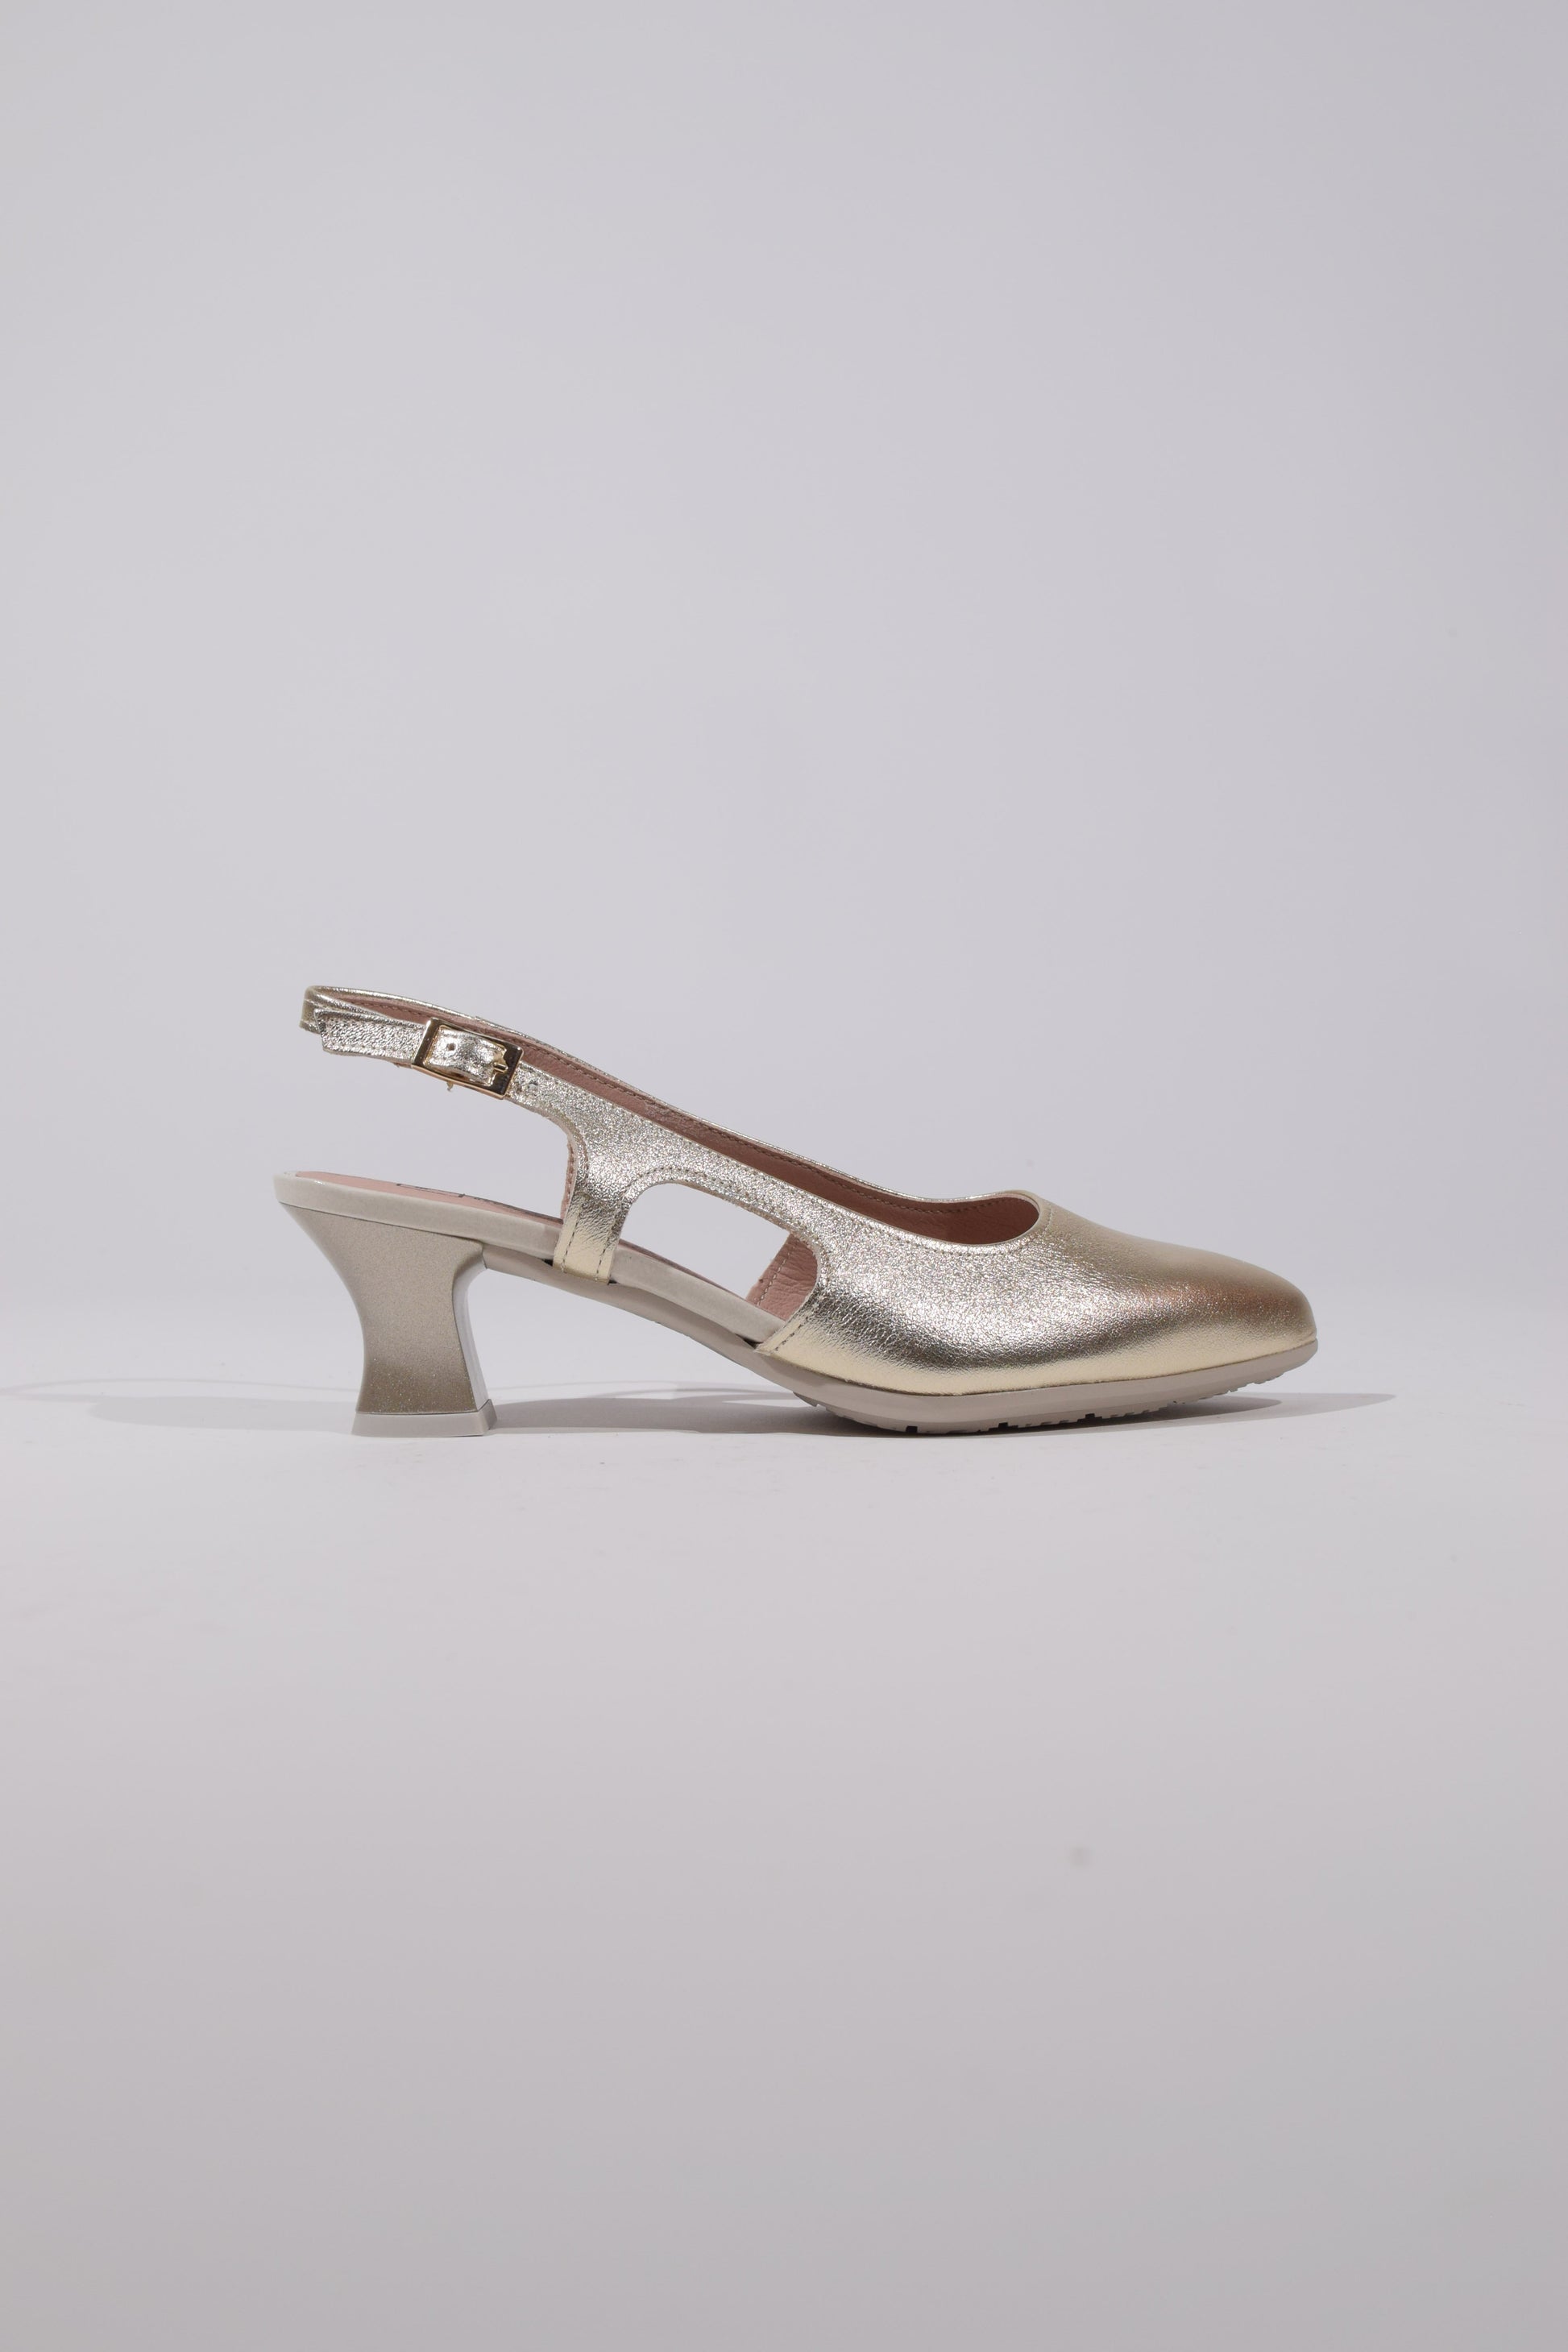 Sandalo in pelle oro con tacco kitten heel - Unico Officina Di tendenza